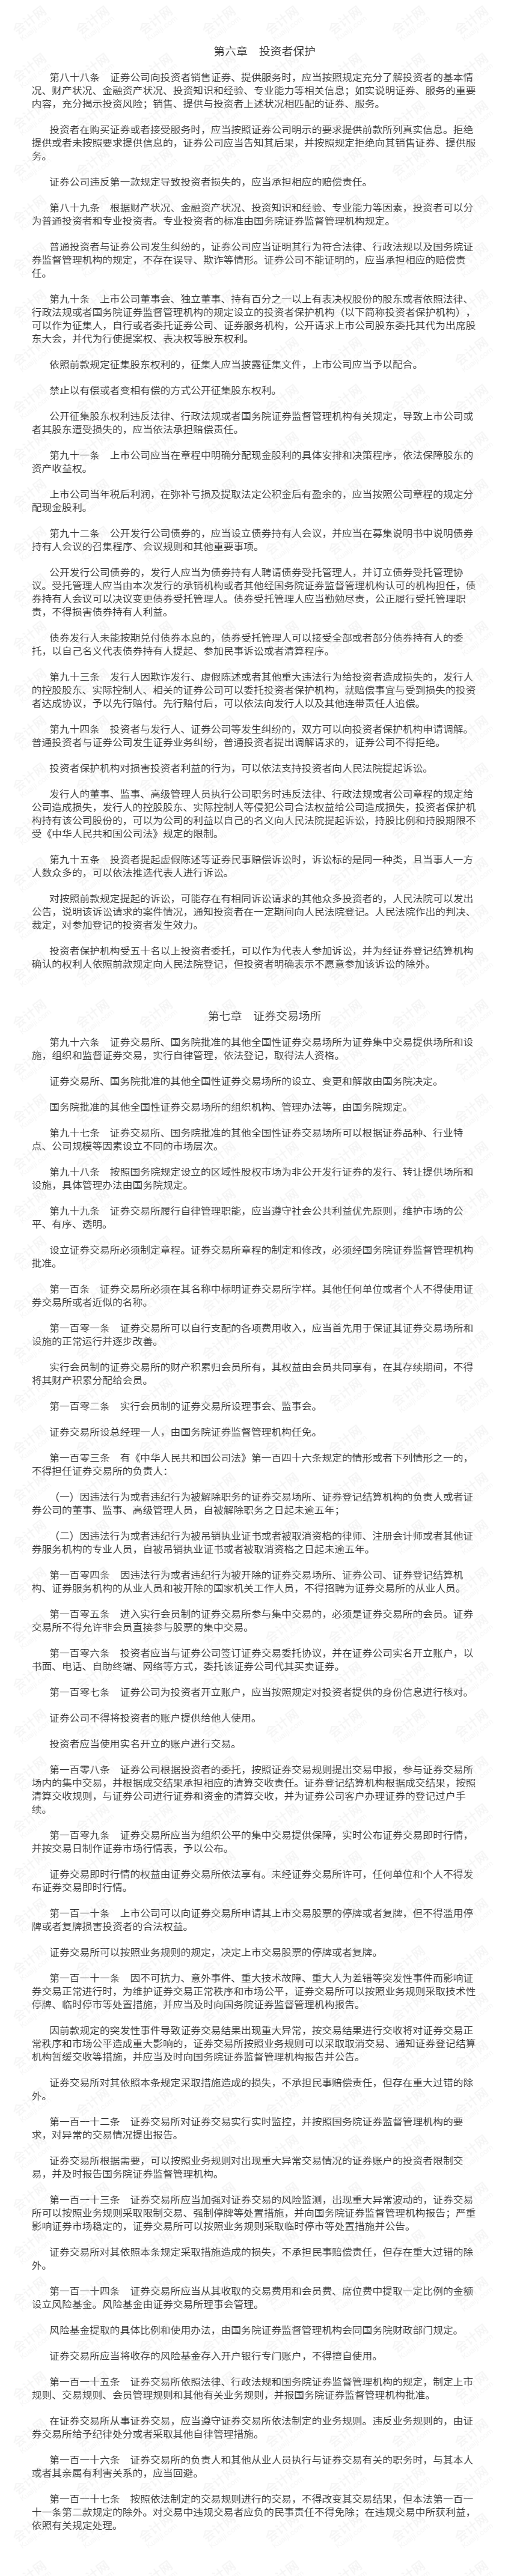 中华人民共和国证券法 第六.png